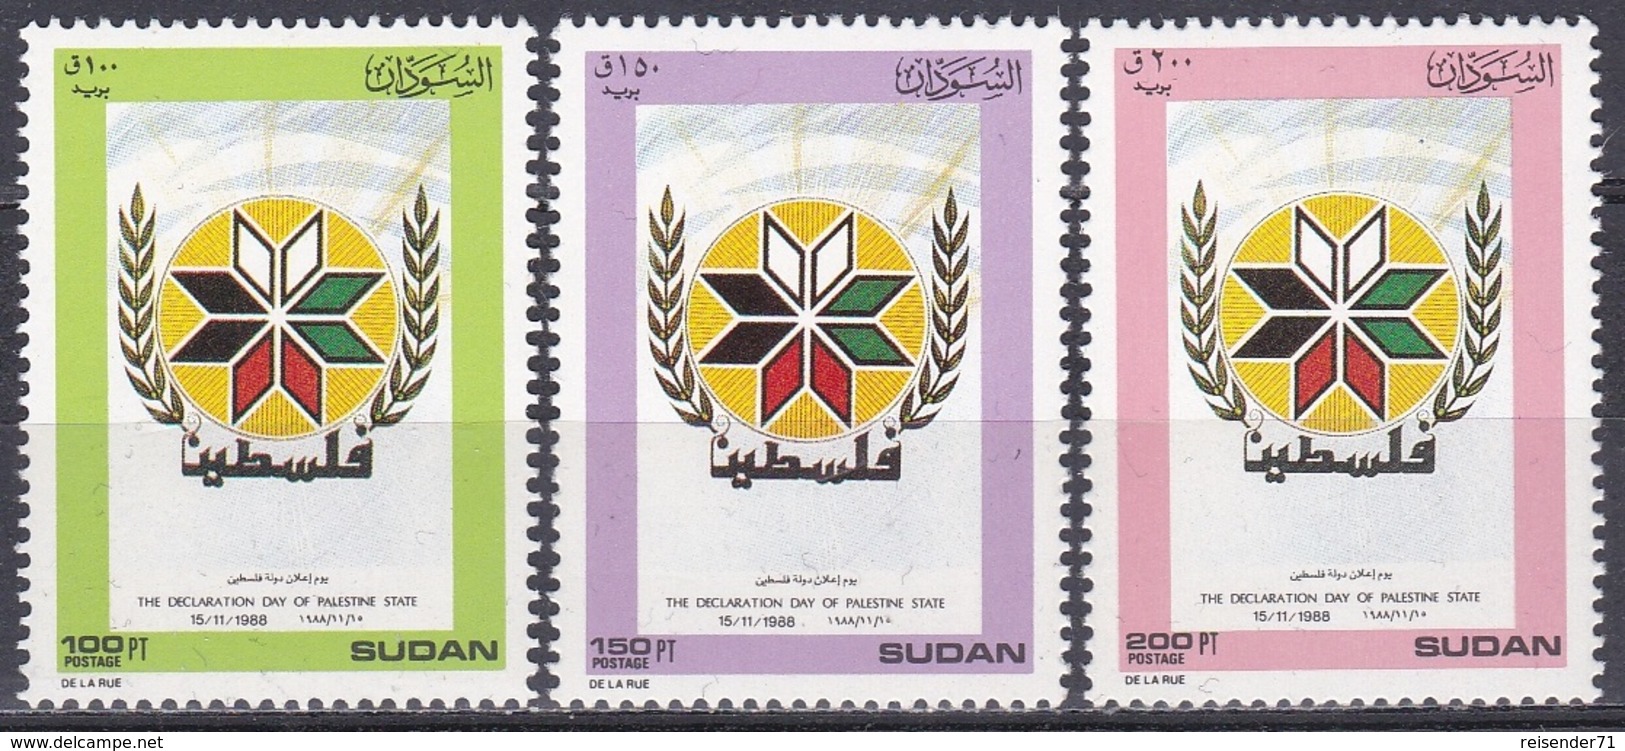 Sudan Soudan 1989 Geschichte History Aufstand Rebellion Palästina Palestine Wappen Arms Naher Osten, Mi. 404-6 ** - Sudan (1954-...)